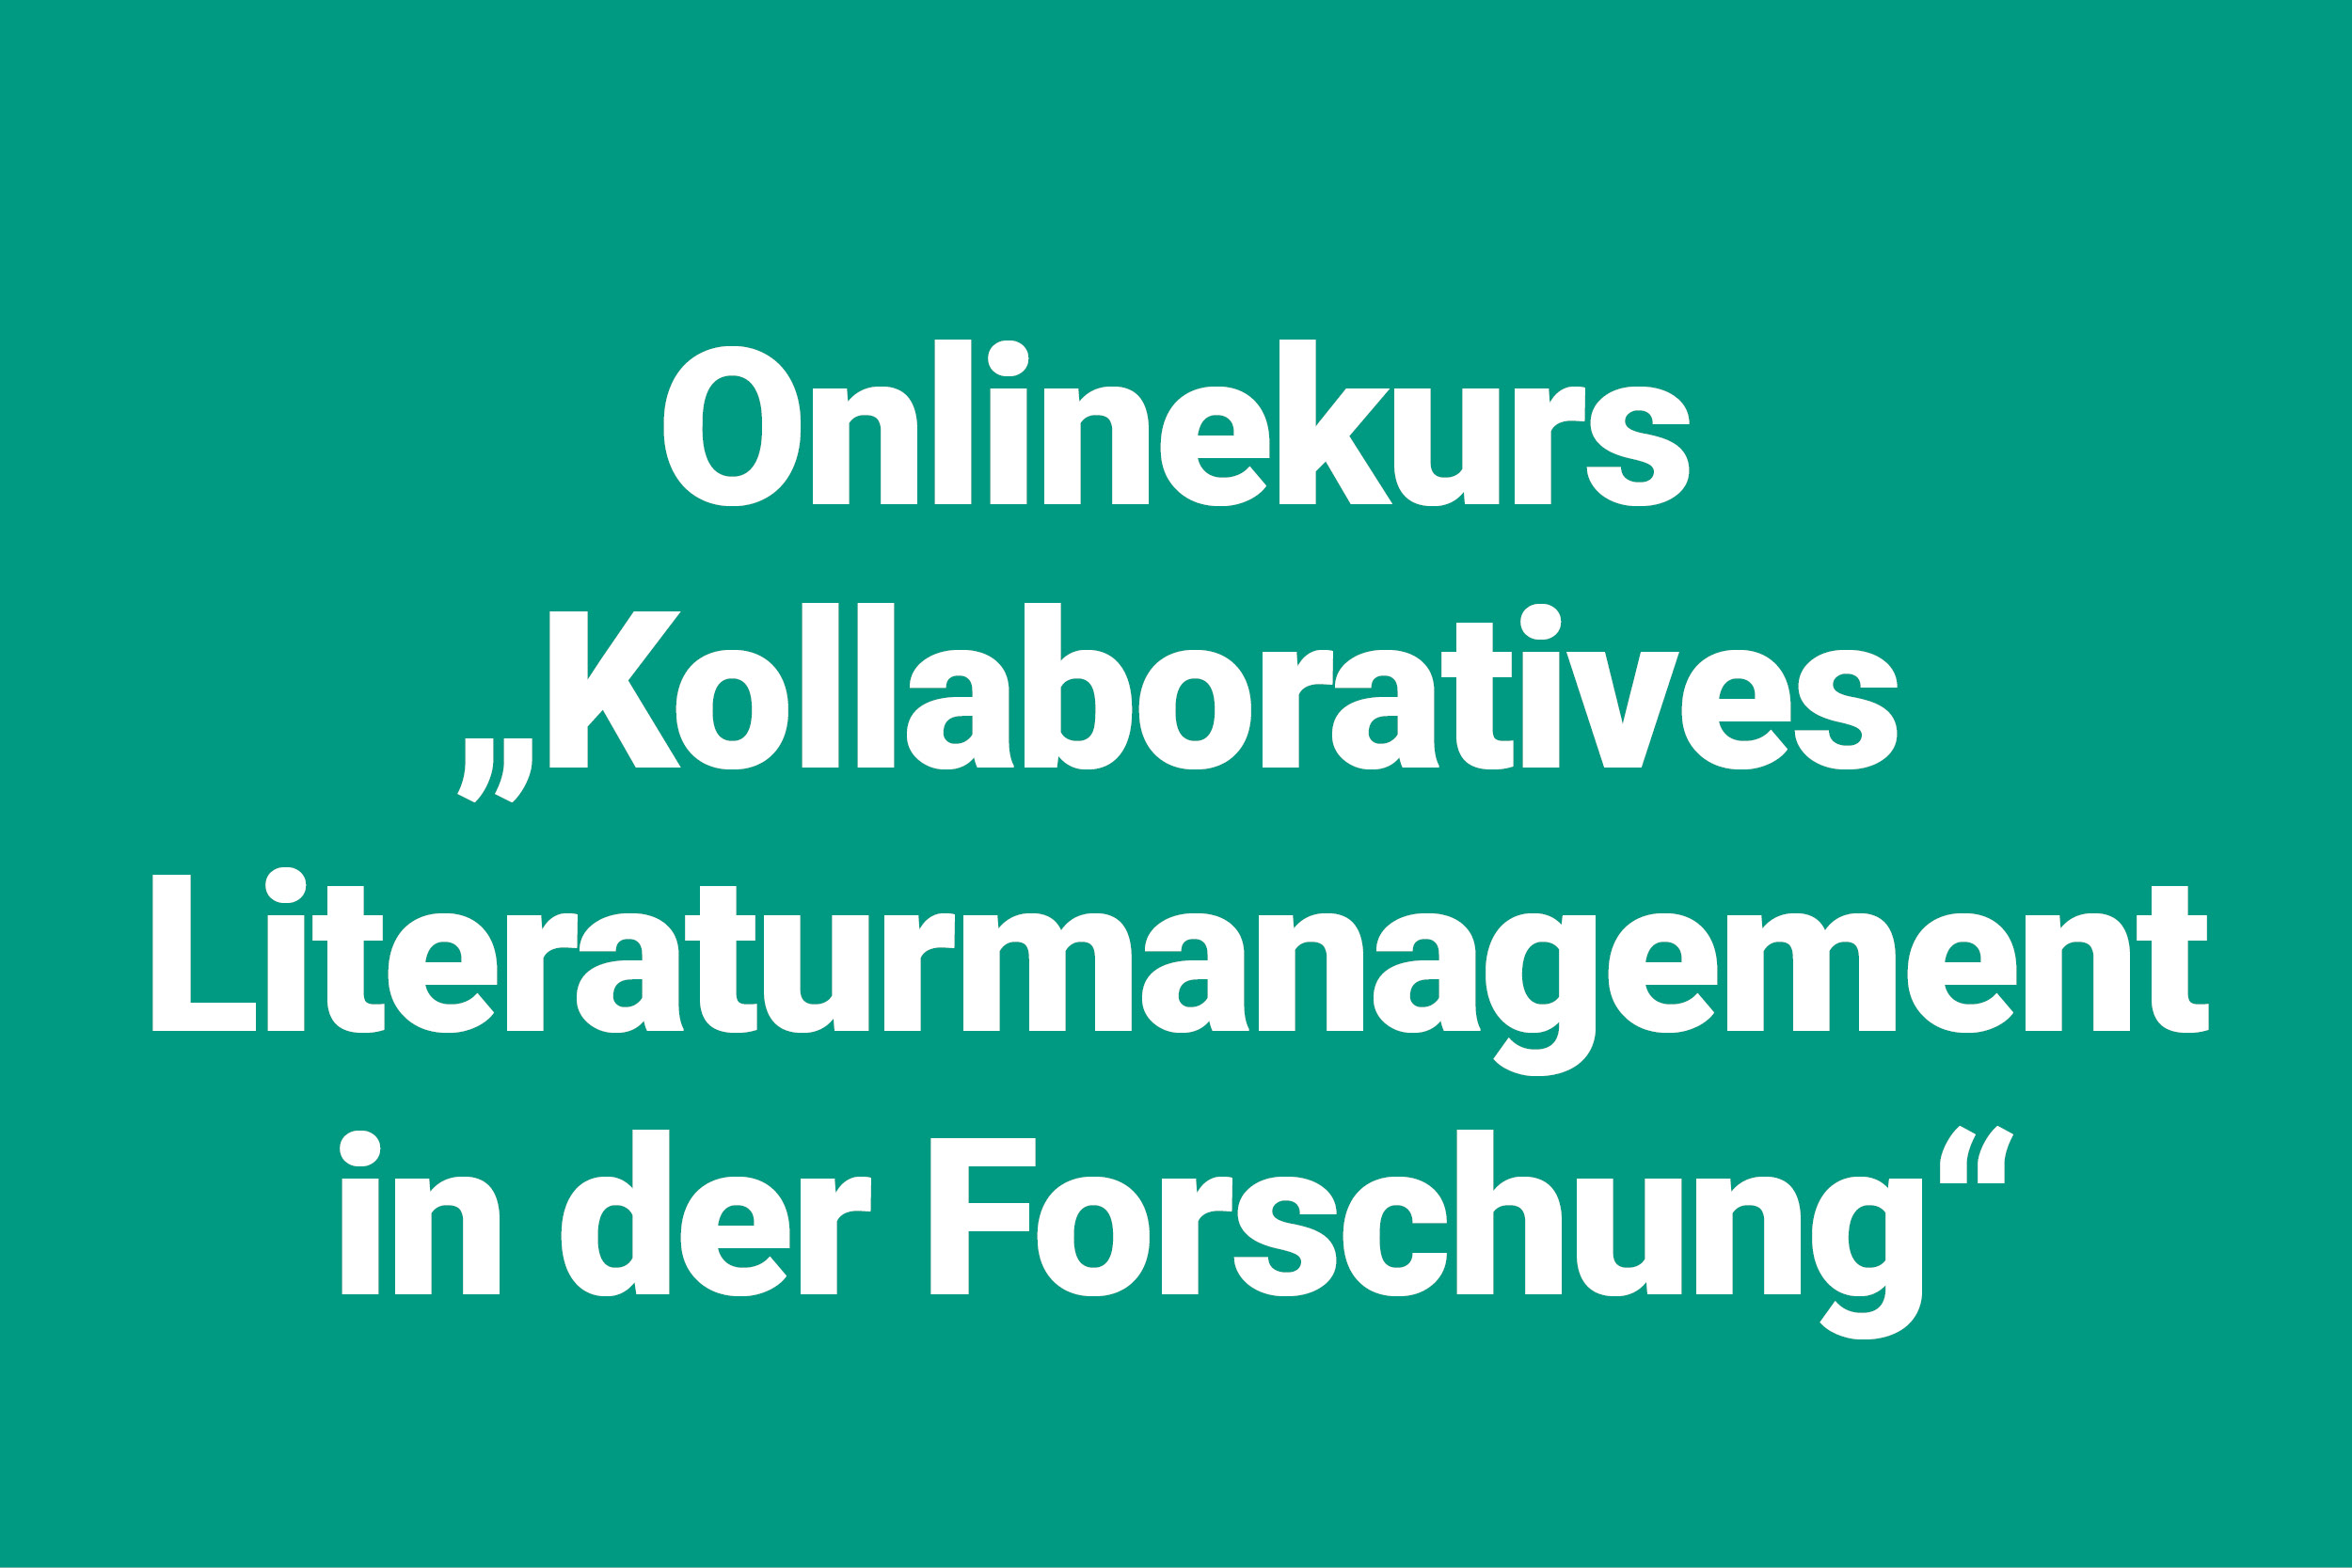 Onlinekurs "Kollaboratives Literaturmanagement in der Forschung"